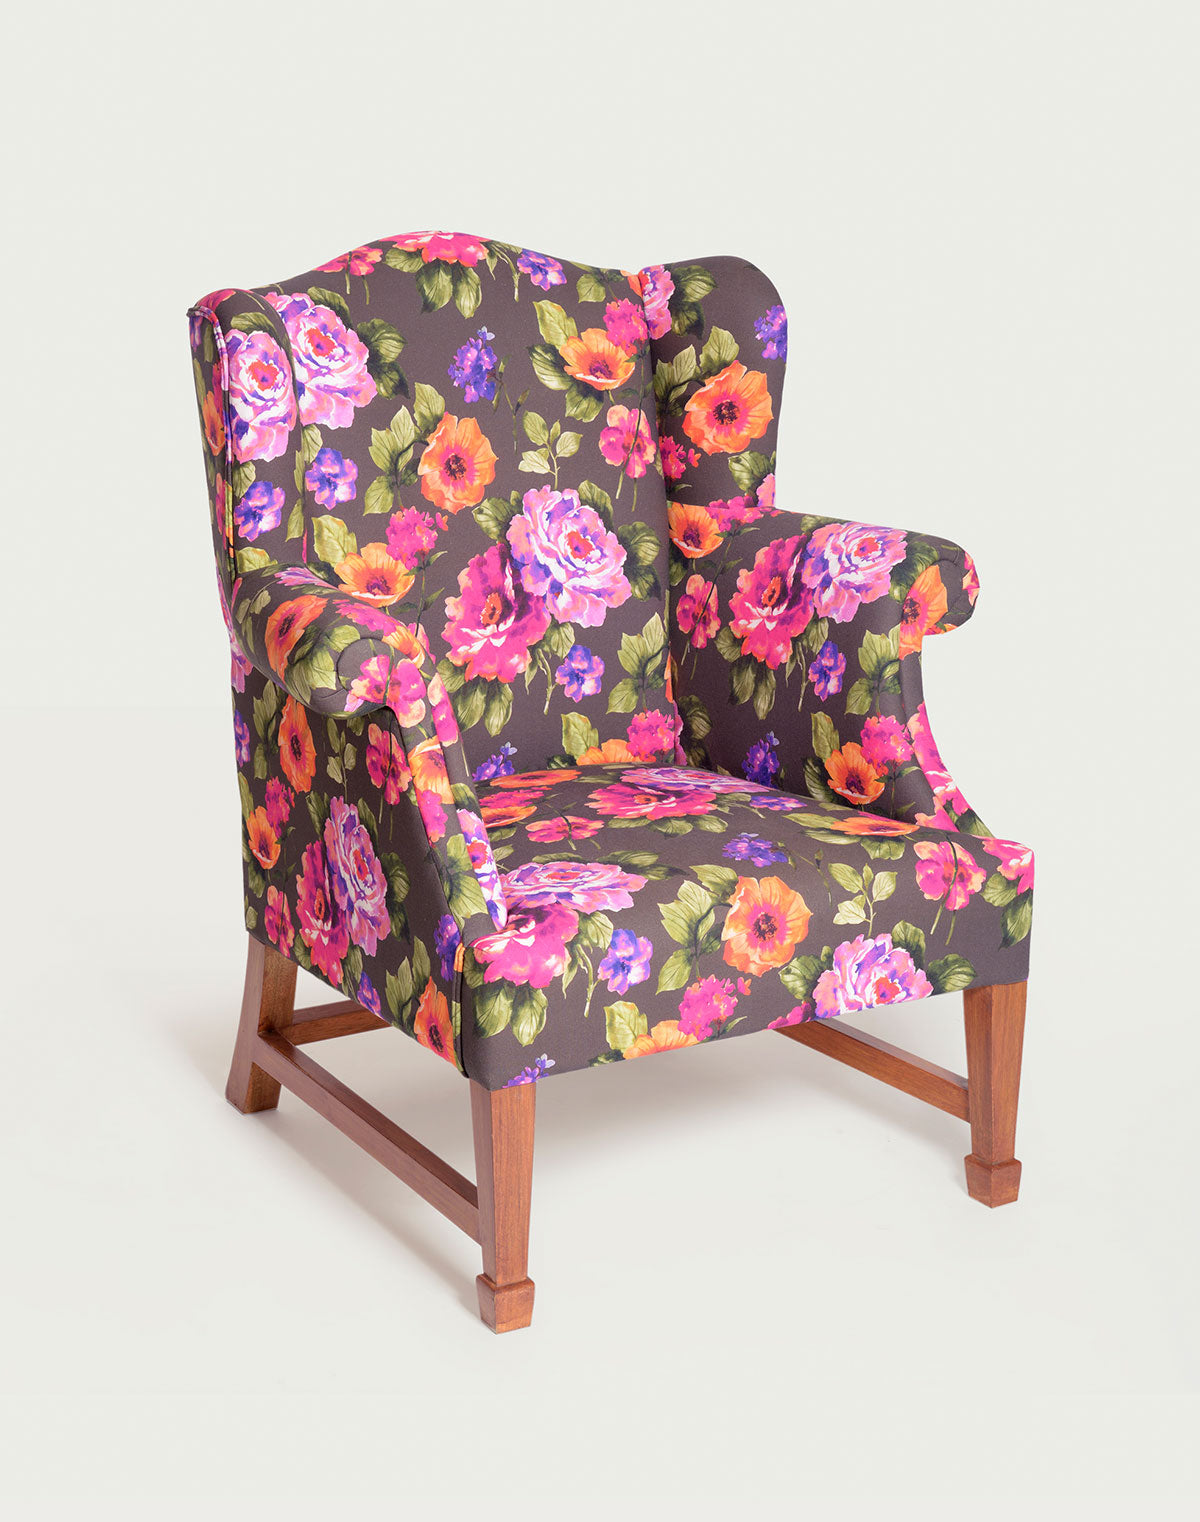 The Daisy Sari Wingback Chair